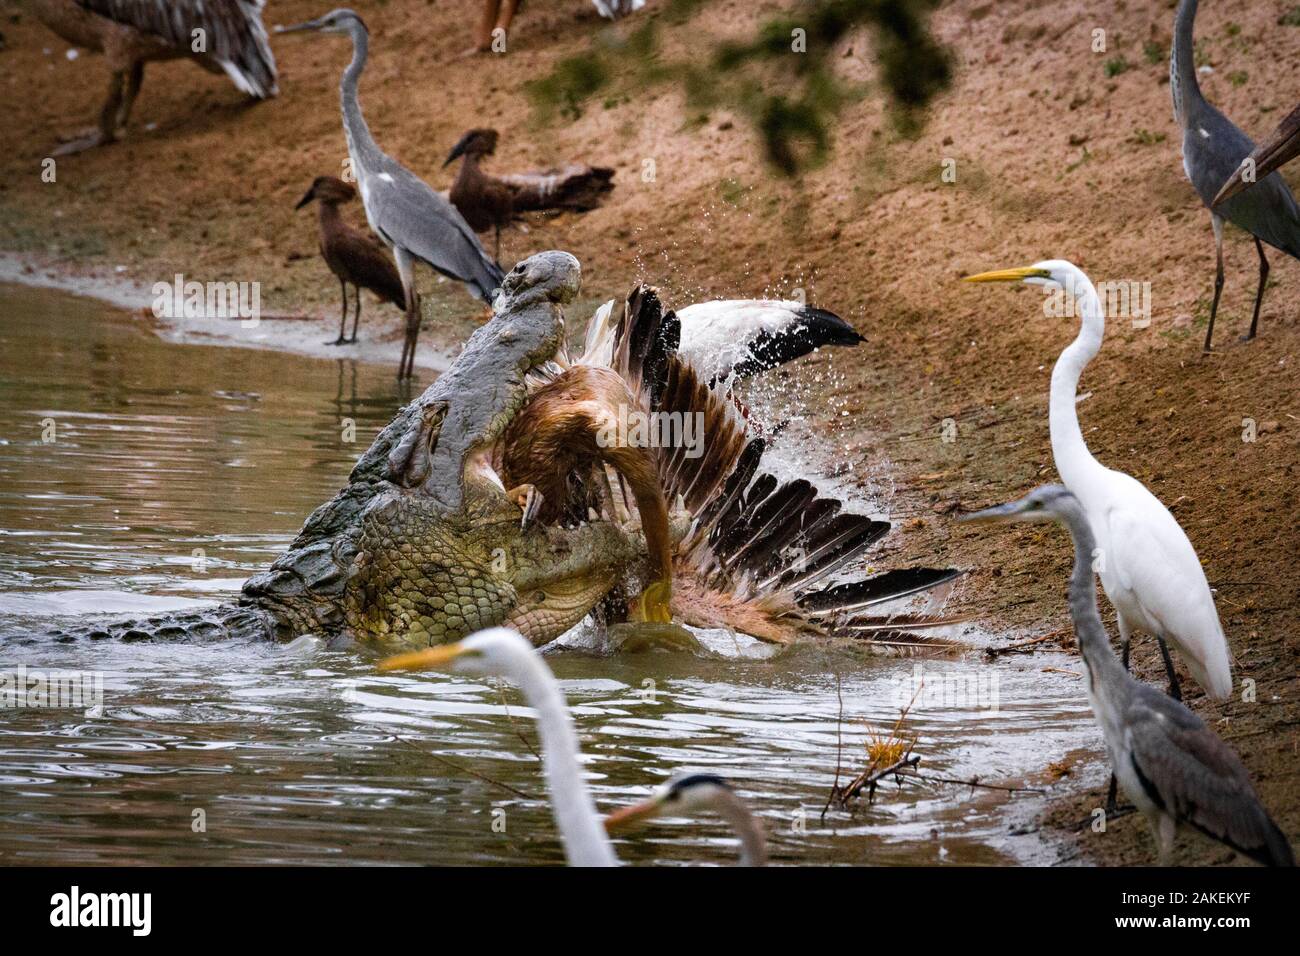 Nilkrokodil (Crocodylus niloticus) mit Great White Pelican (Pelecanus onocrotalus) Beute. Andere Vögel beobachten Sie vom Ufer aus, einschließlich großer Reiher (Ardea alba) Graureiher (Ardea cinerea) und hamerkops (Scopus umbretta). Msicadzi Fluss, gorongosa National Park, Mosambik während der trockenen Jahreszeit viele Wasserquellen versiegen, Trapping Fische in kleineren Bereichen. Viele Vögel und Krokodile sammeln auf dieser reichlich Nahrung zu füttern. Doch die Krokodile werden auch Jagd auf die Vögel, wenn sie können. Stockfoto